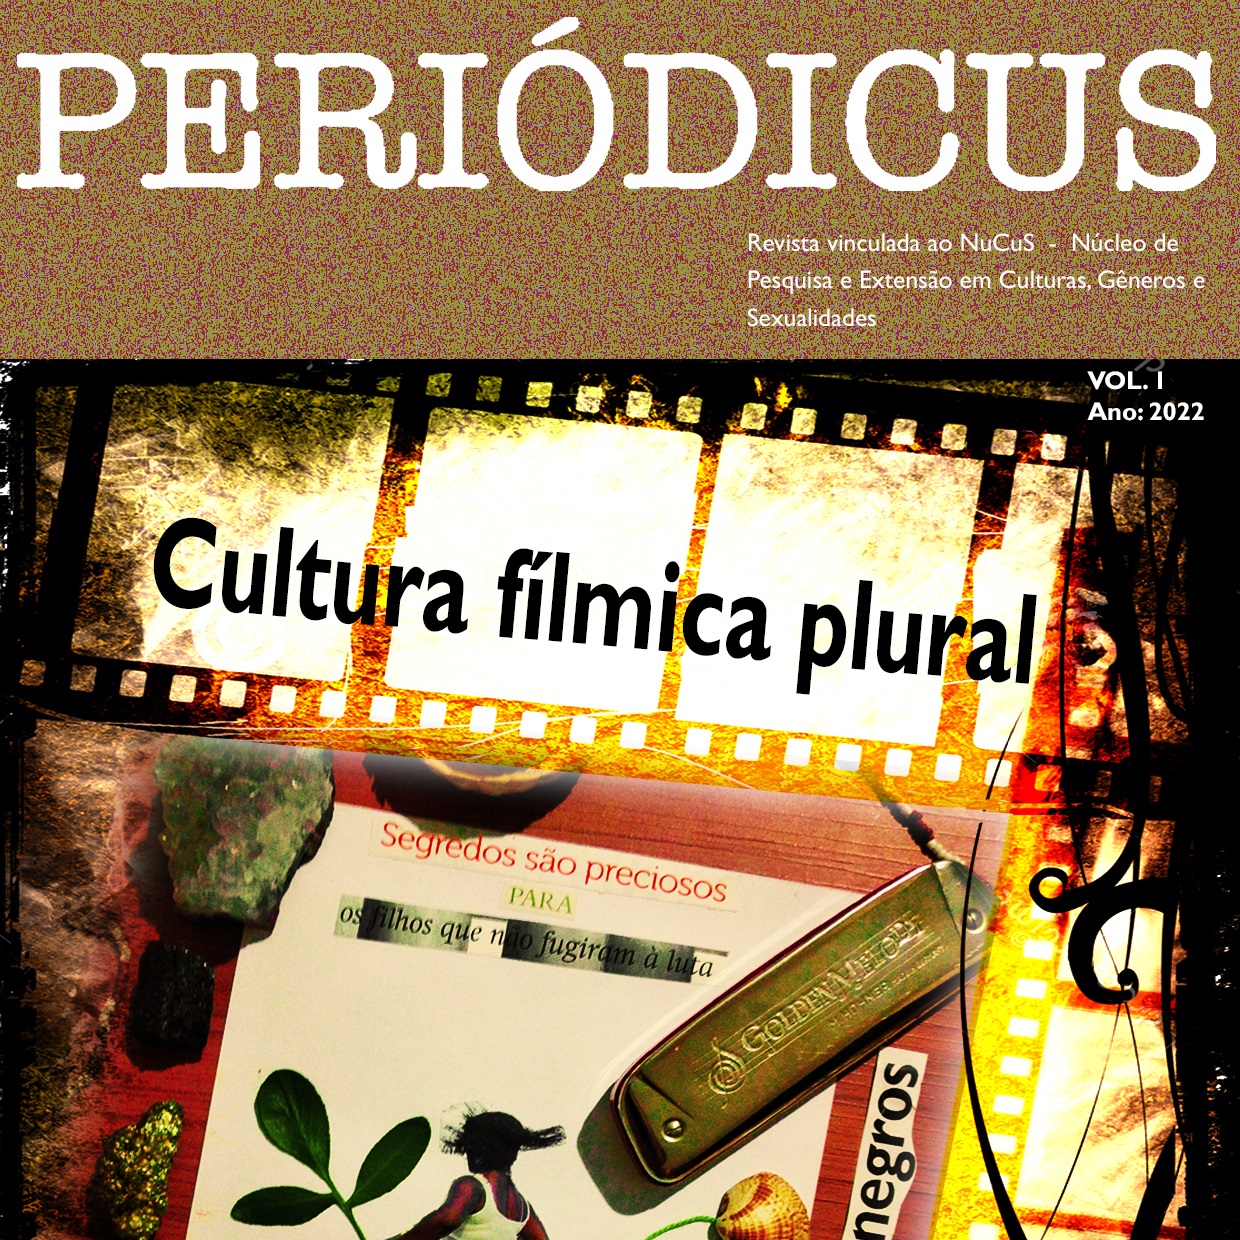 Periódicus lança nova edição em 2022